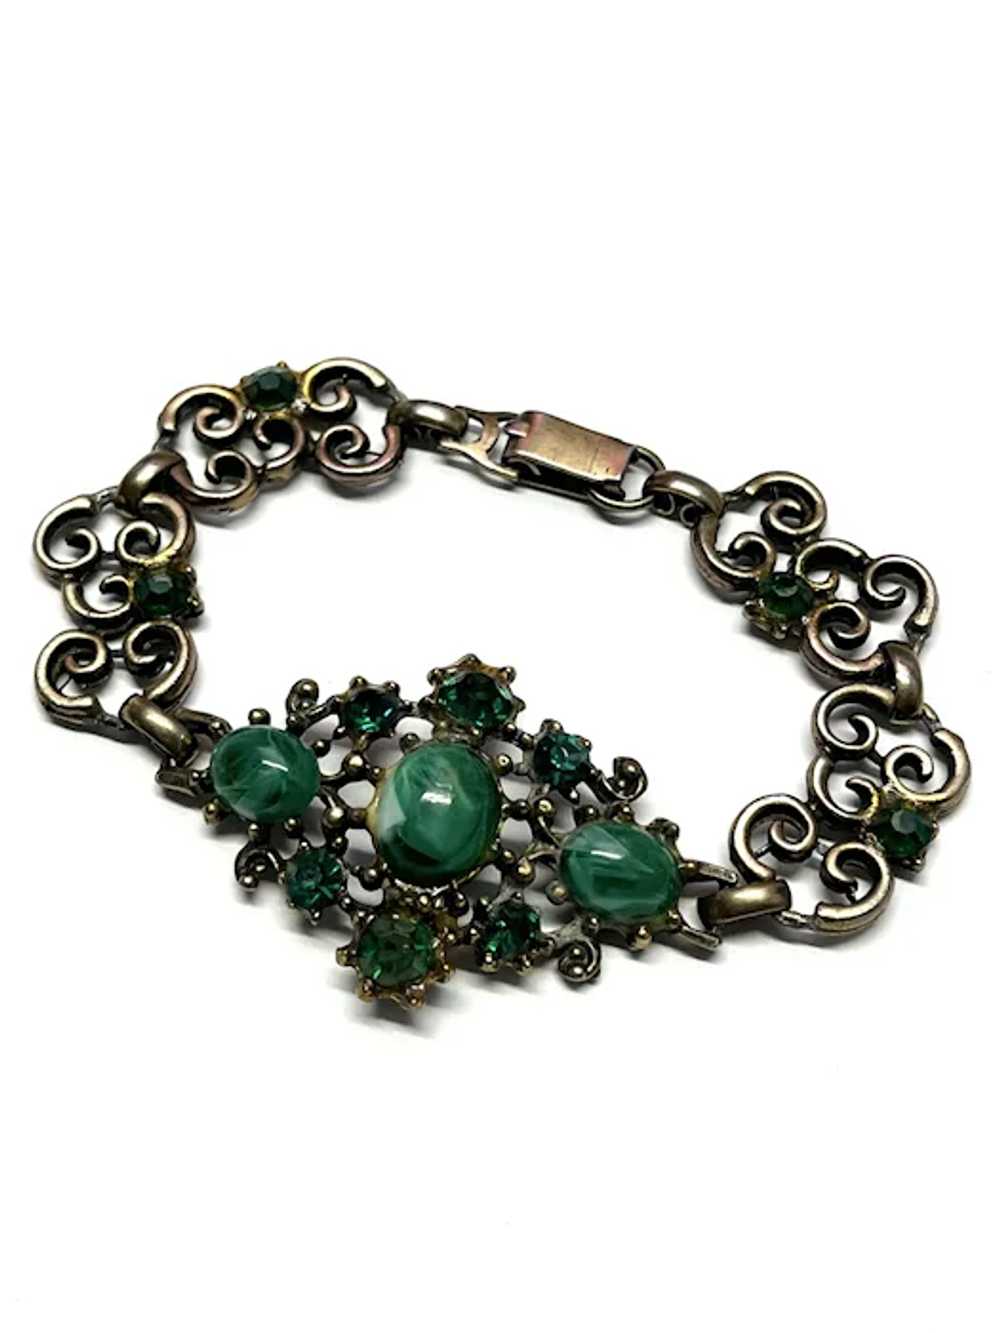 Vintage Green Glass Bracelet - image 3